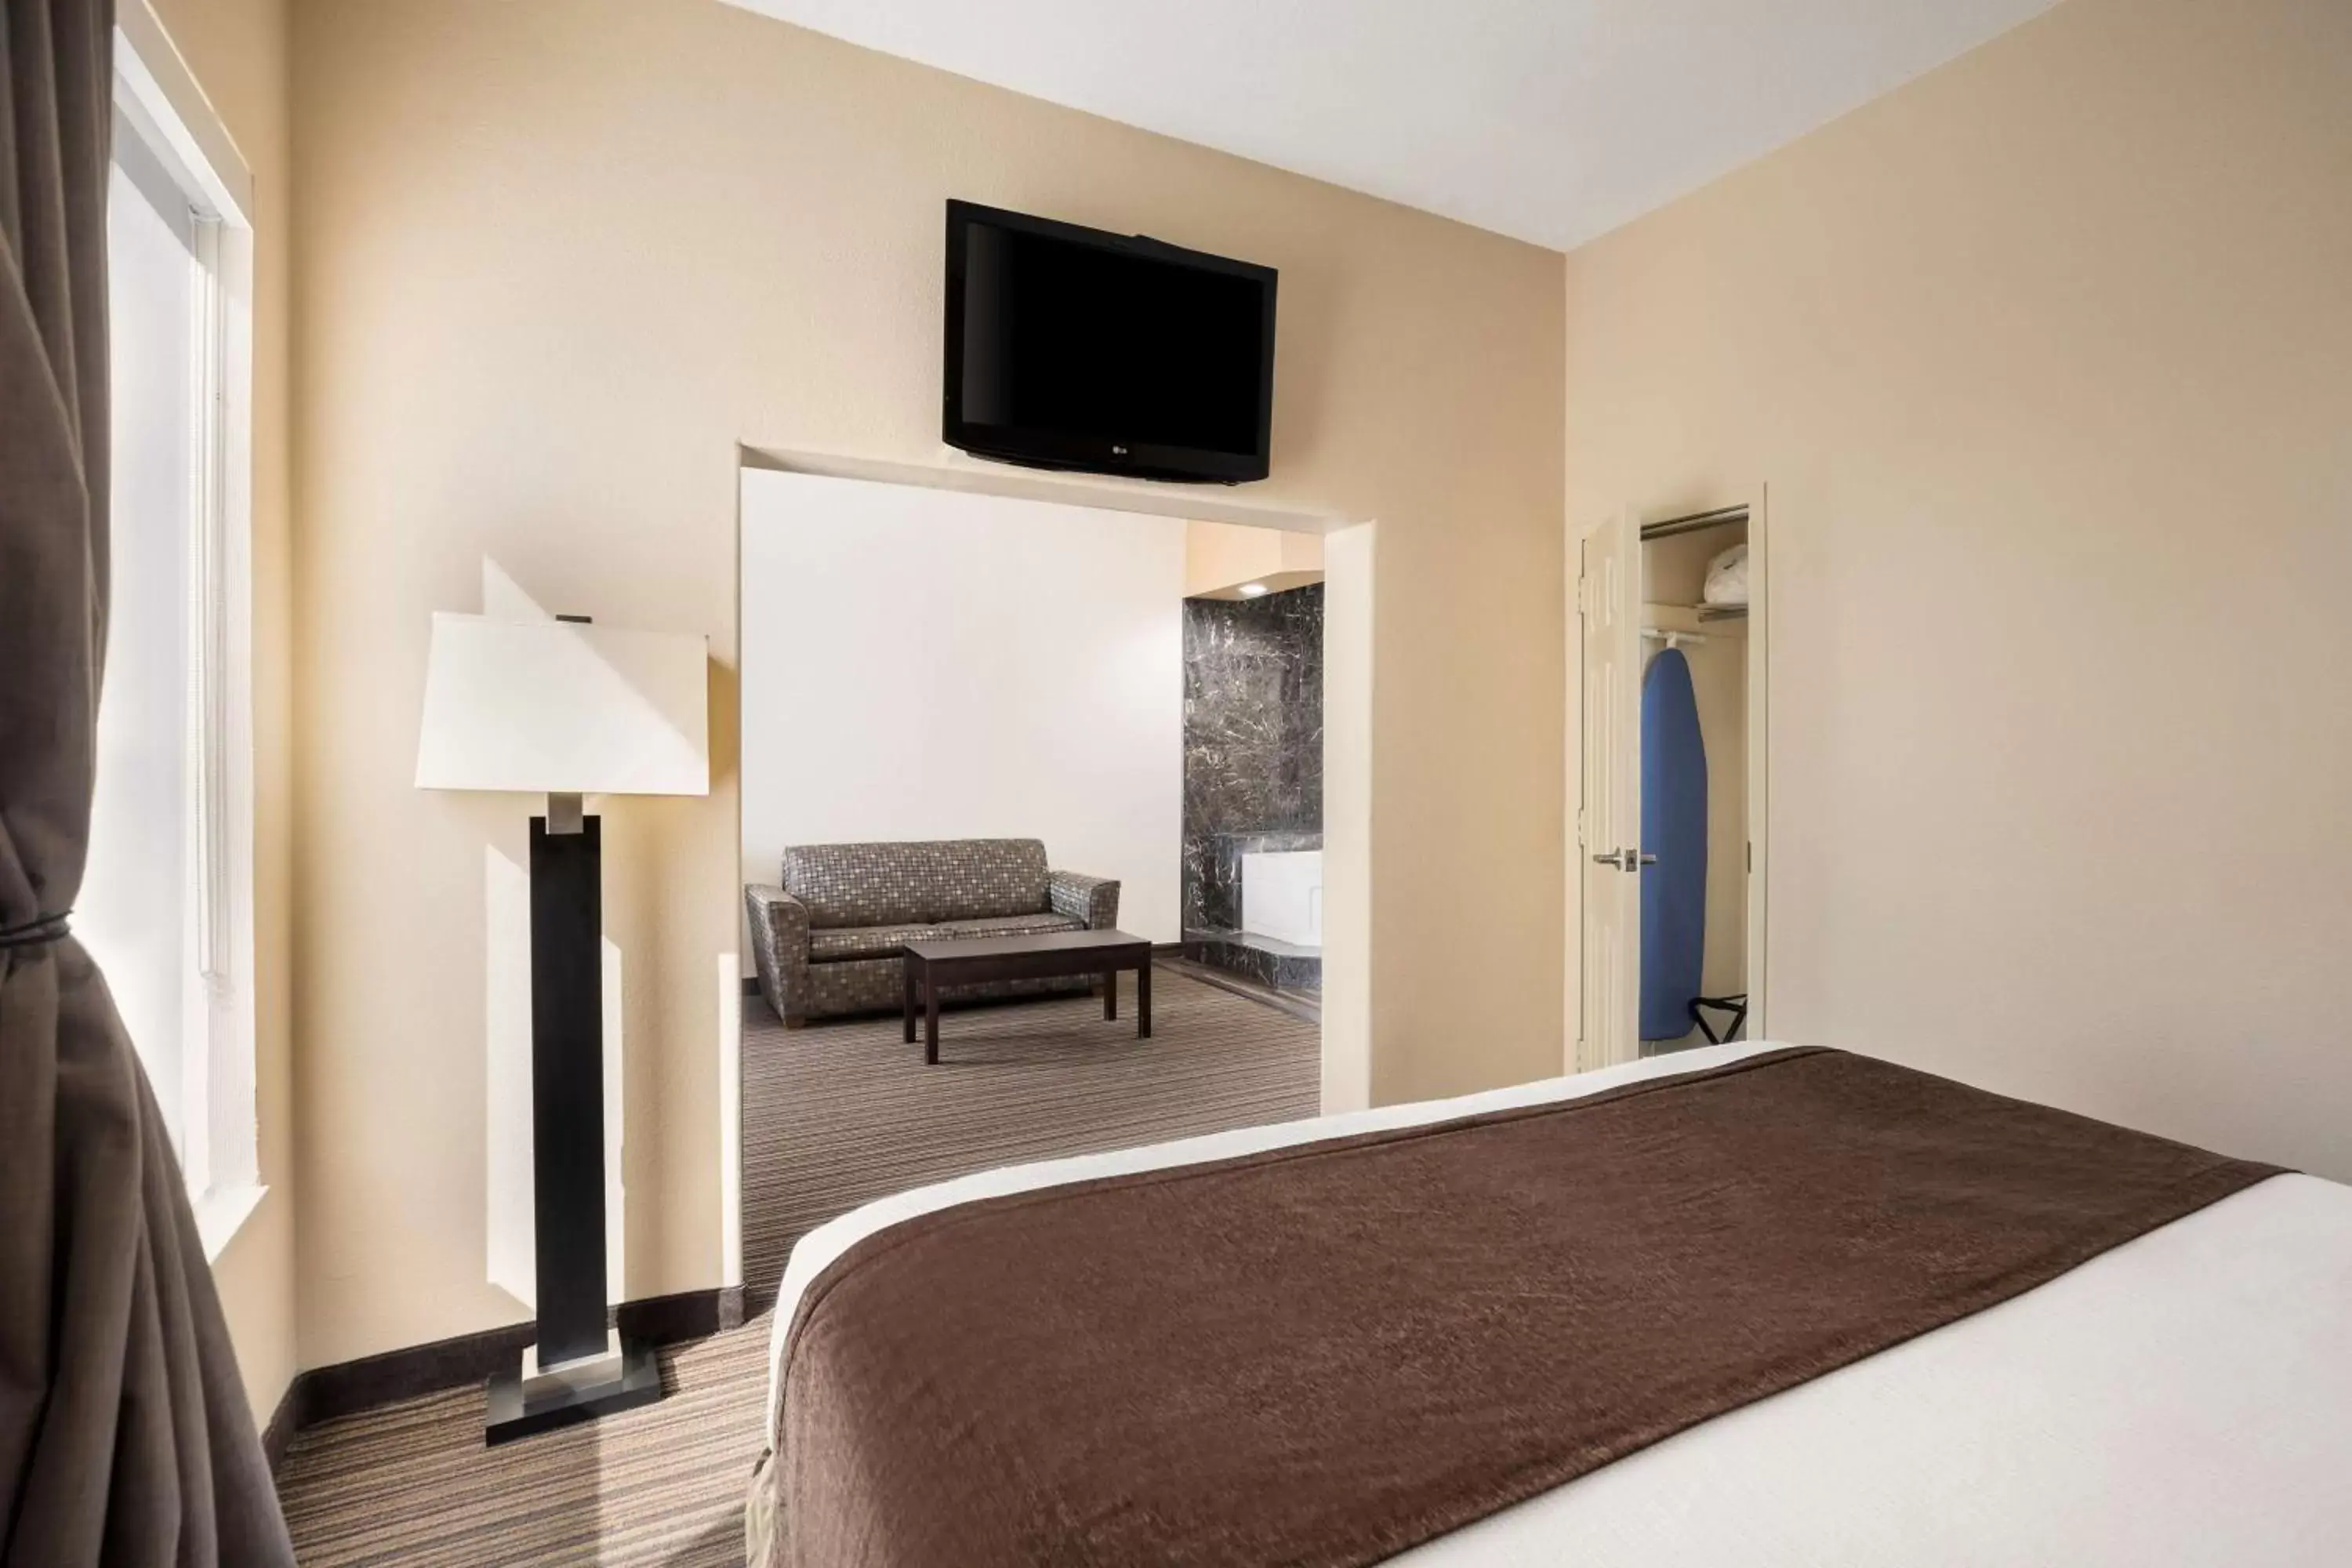 Bedroom, TV/Entertainment Center in Best Western Houma Inn